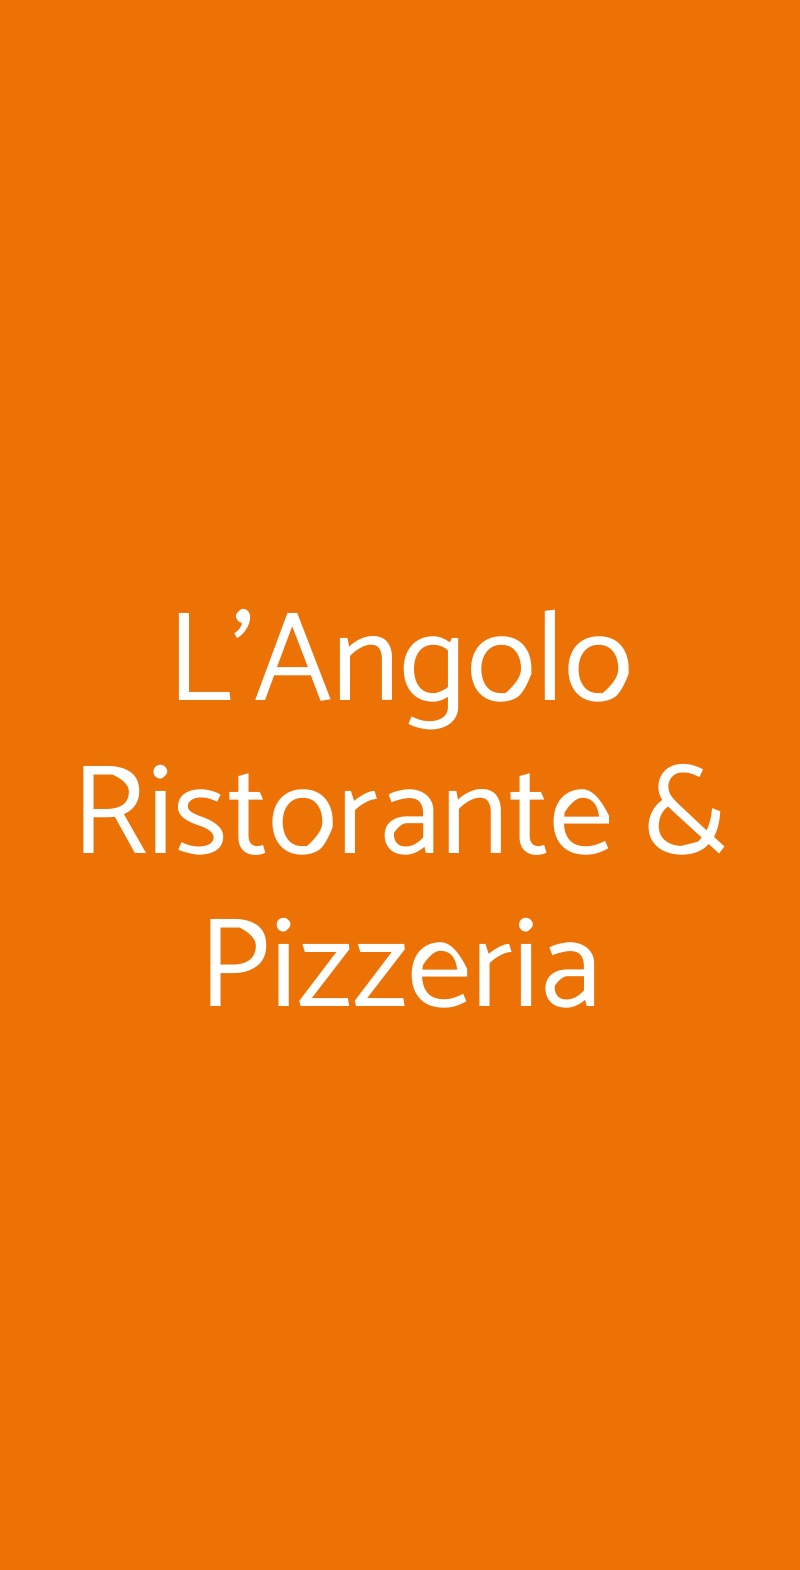 L'Angolo Ristorante & Pizzeria Montepulciano menù 1 pagina